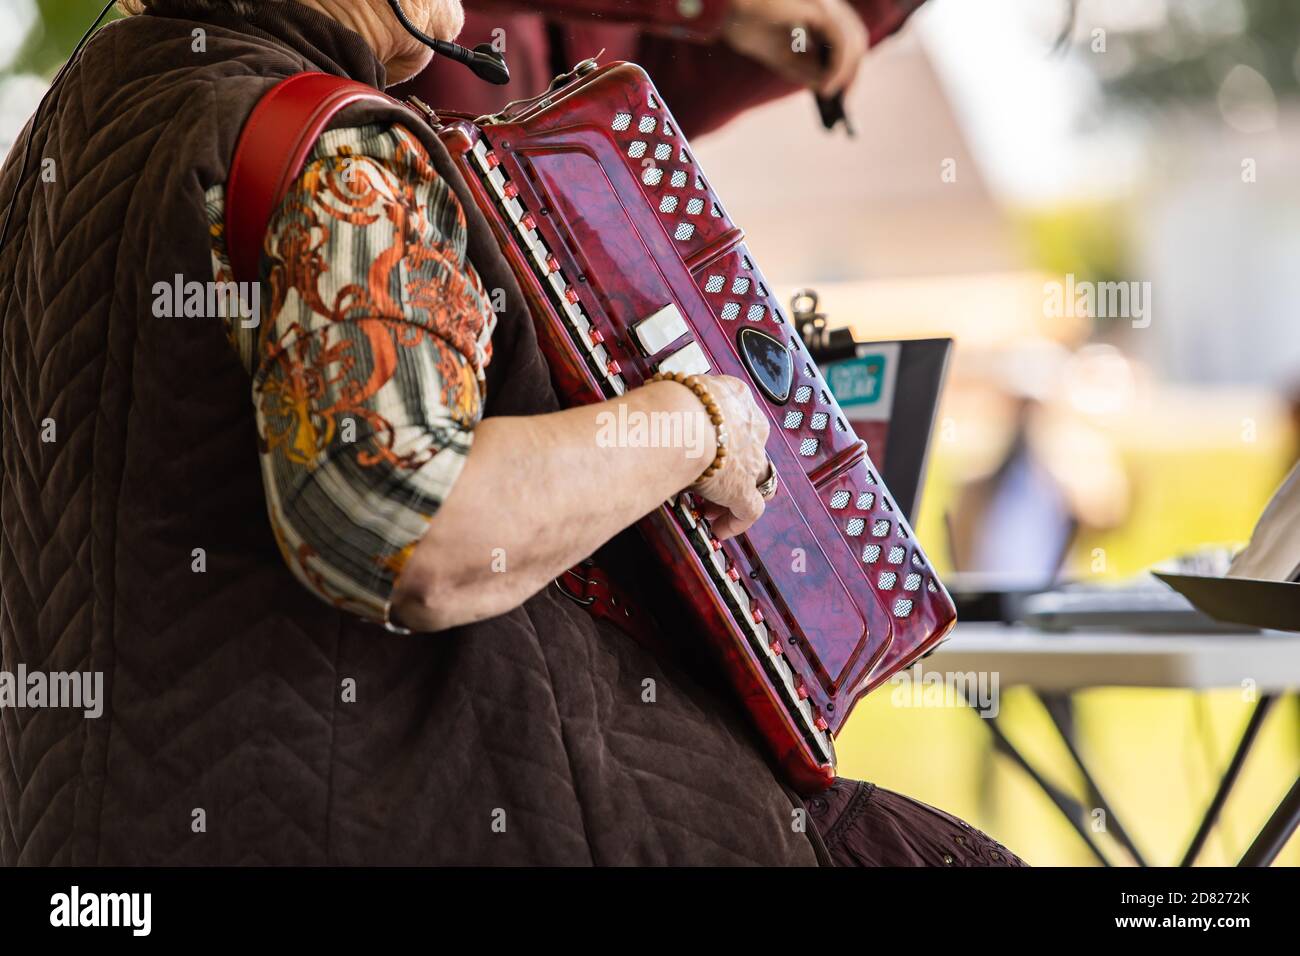 Selektiver Fokus der reifen Person trägt und spielt Akkordeon-Musical  Instrument mit Bezug auf Noten im Buch in Kultur fiesta Stockfotografie -  Alamy